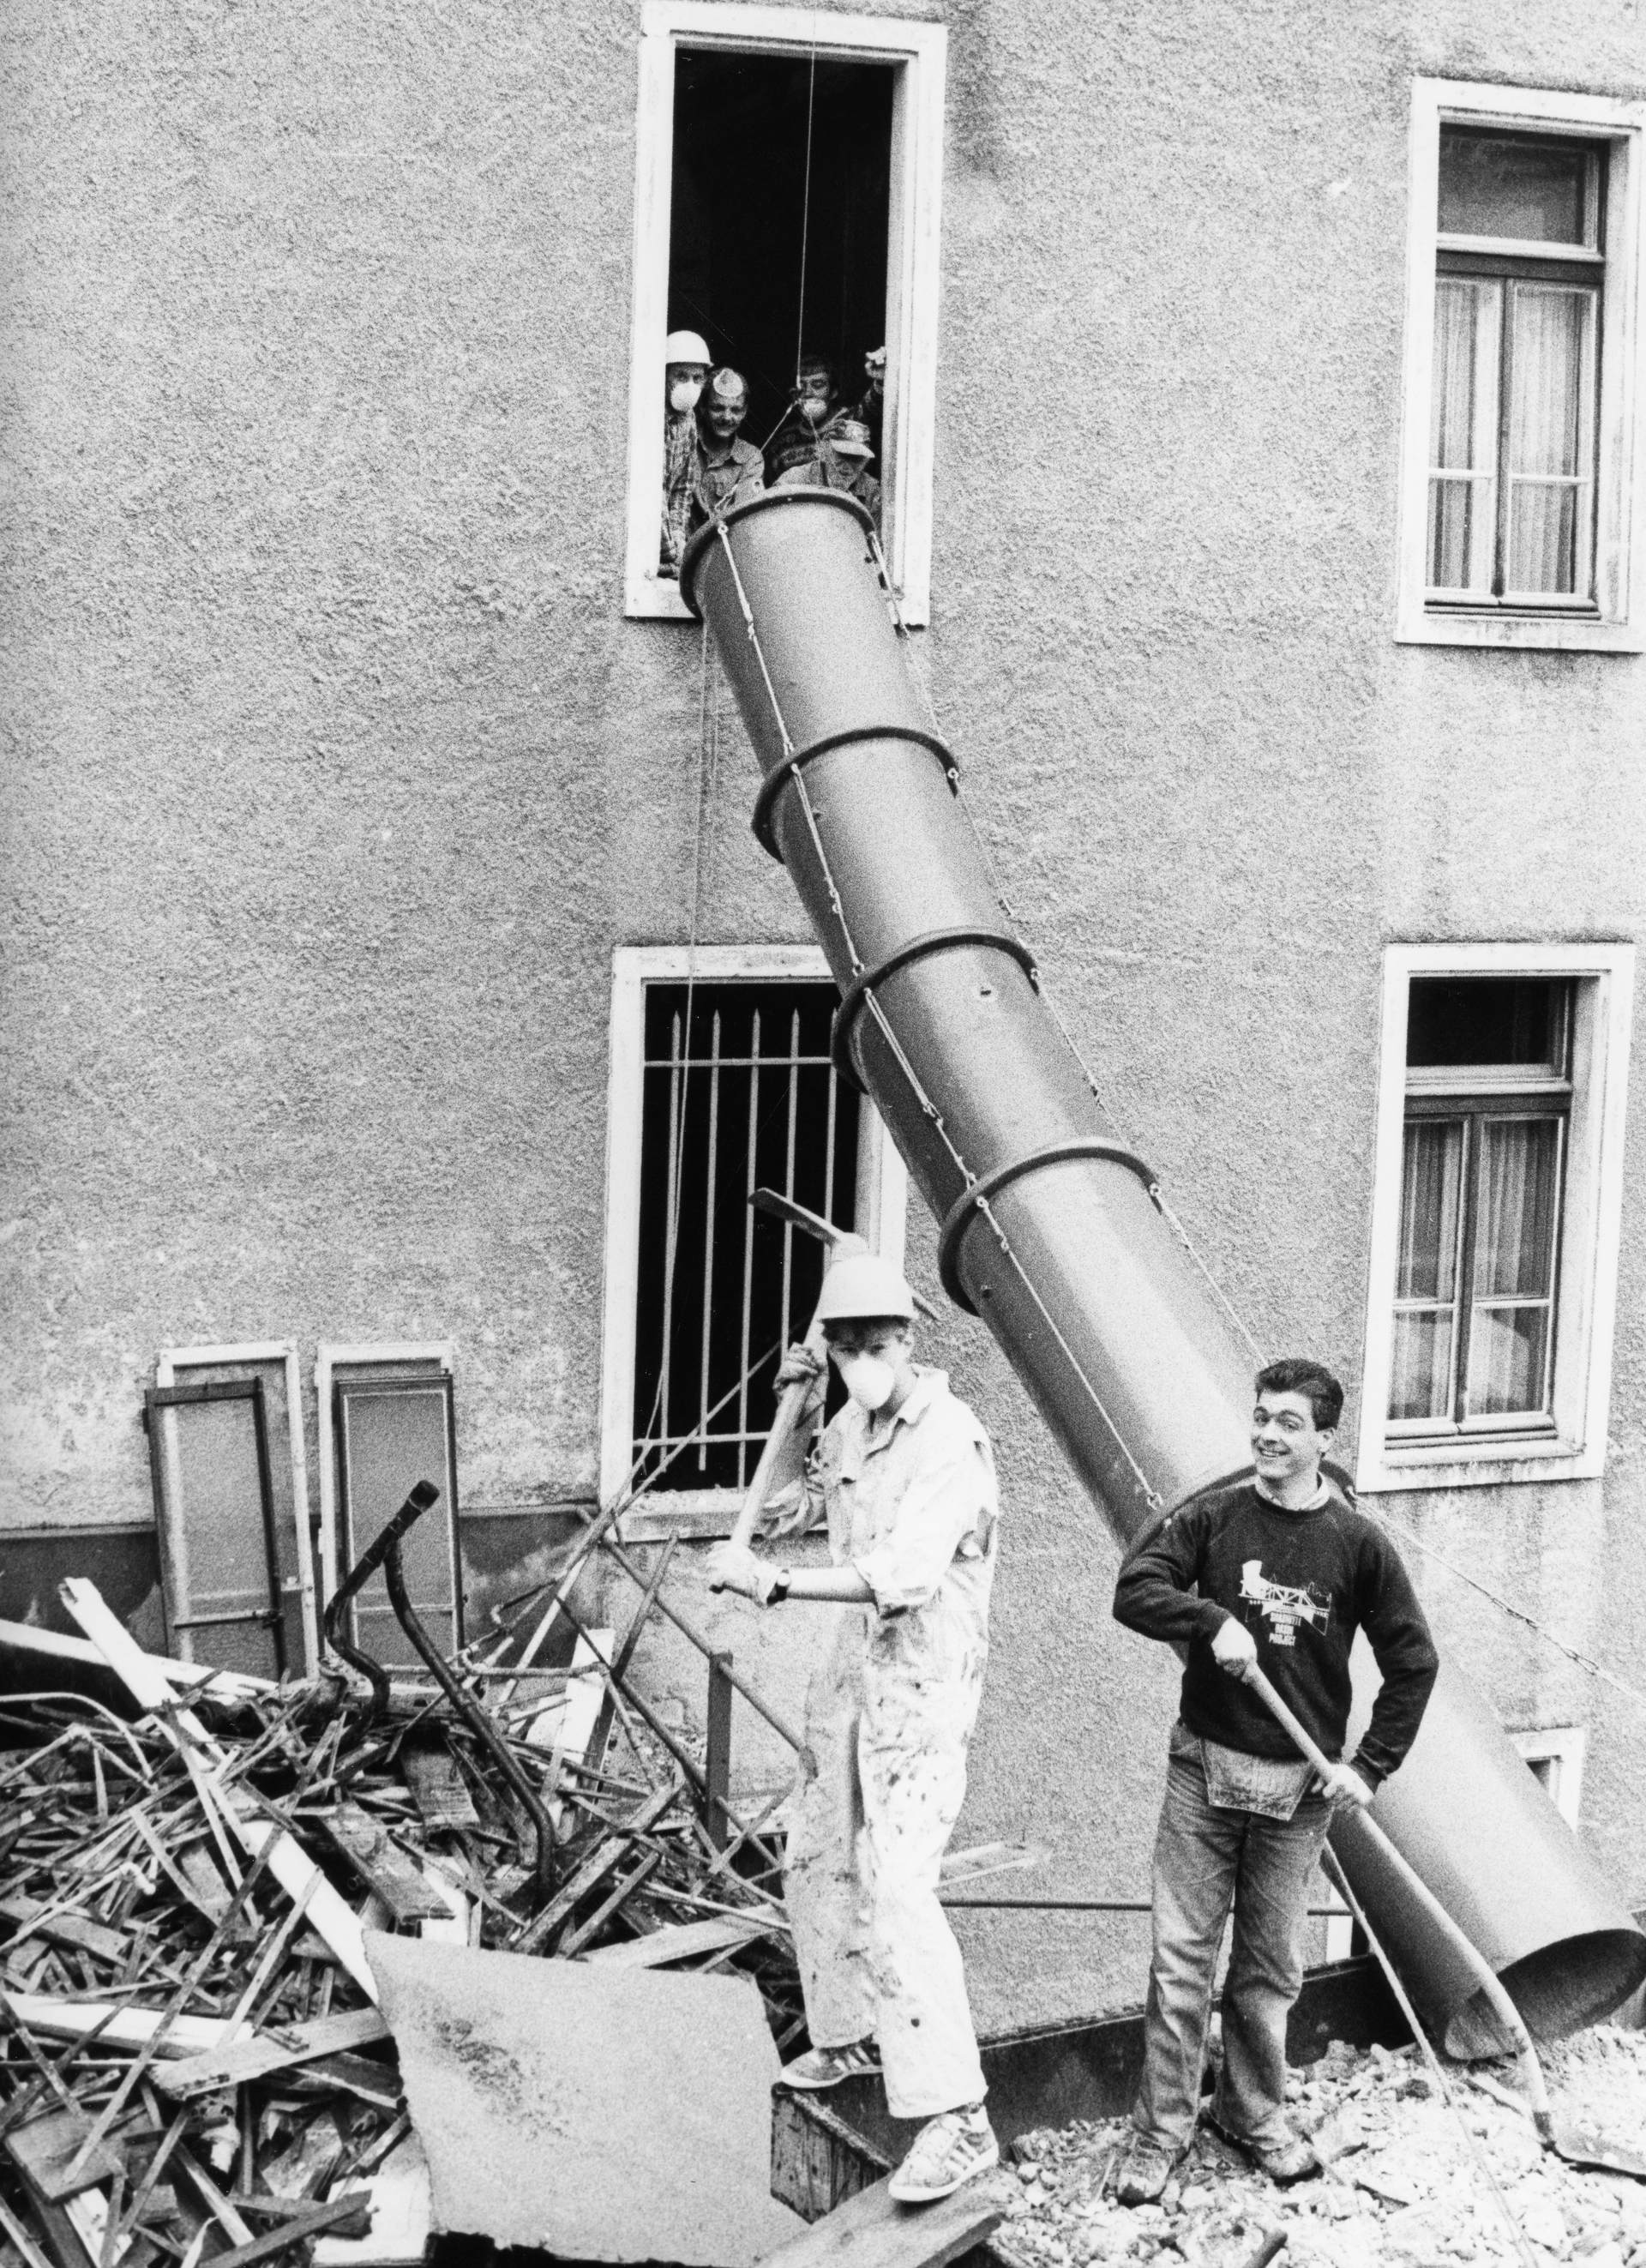 Demolishing is also fun 1988